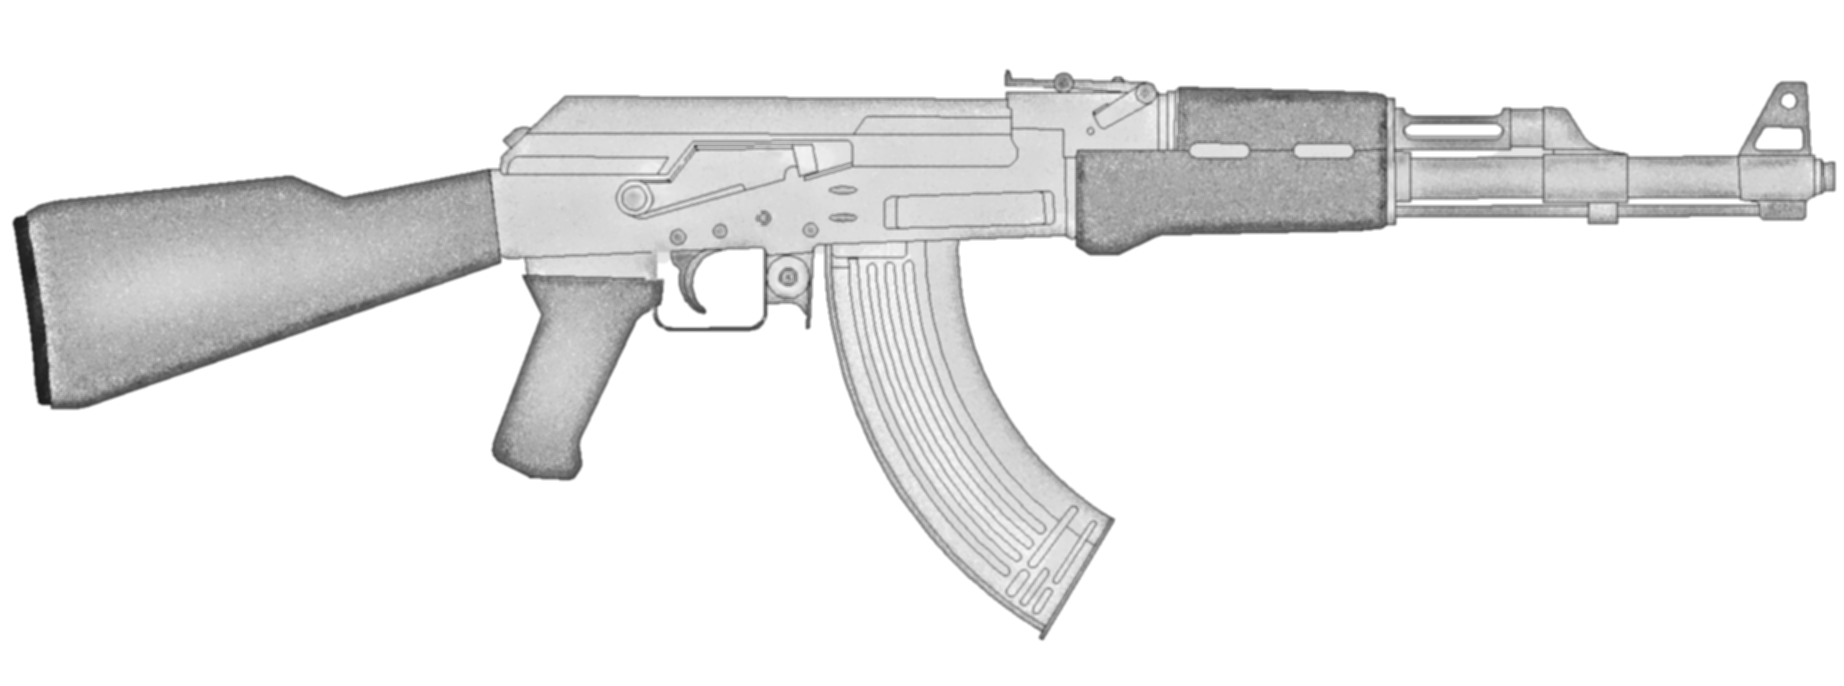 Автомат Калашникова АК-47 из дерева чертежи